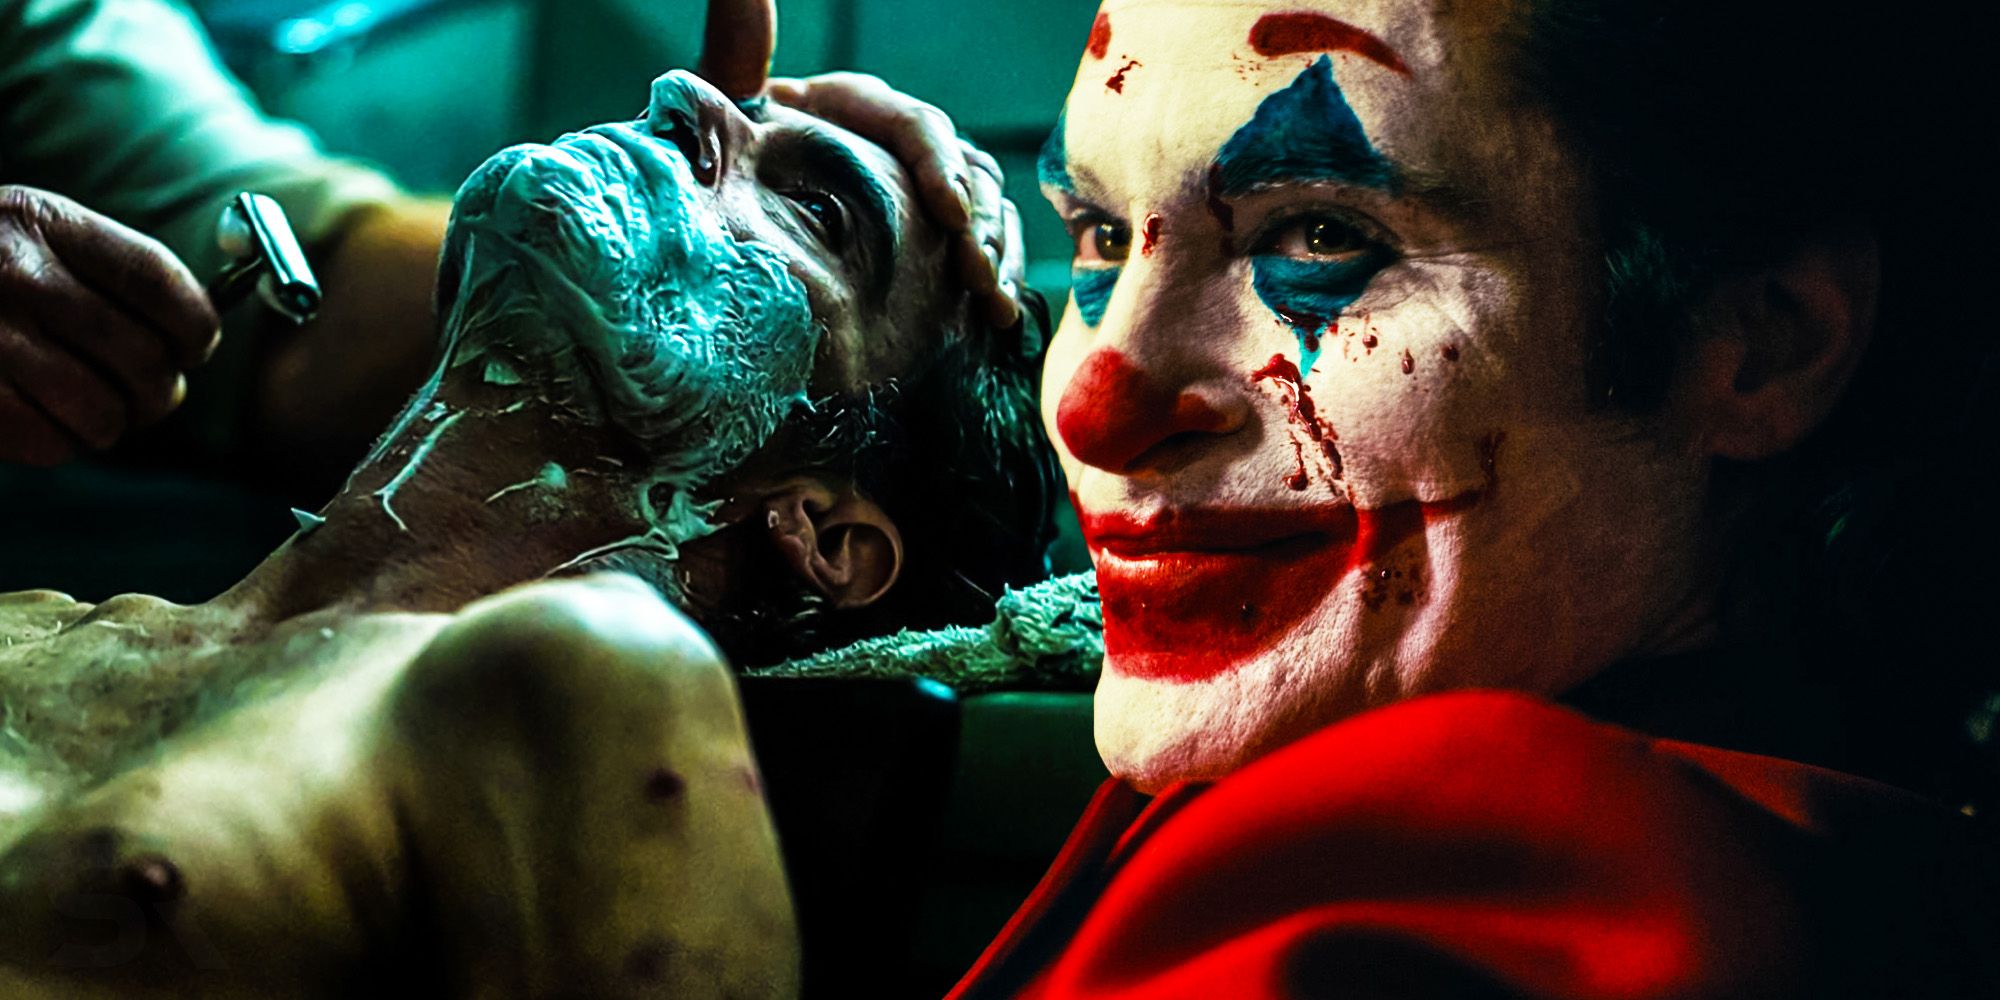 Joker 2: Photos, Cast, Plot, Release Date